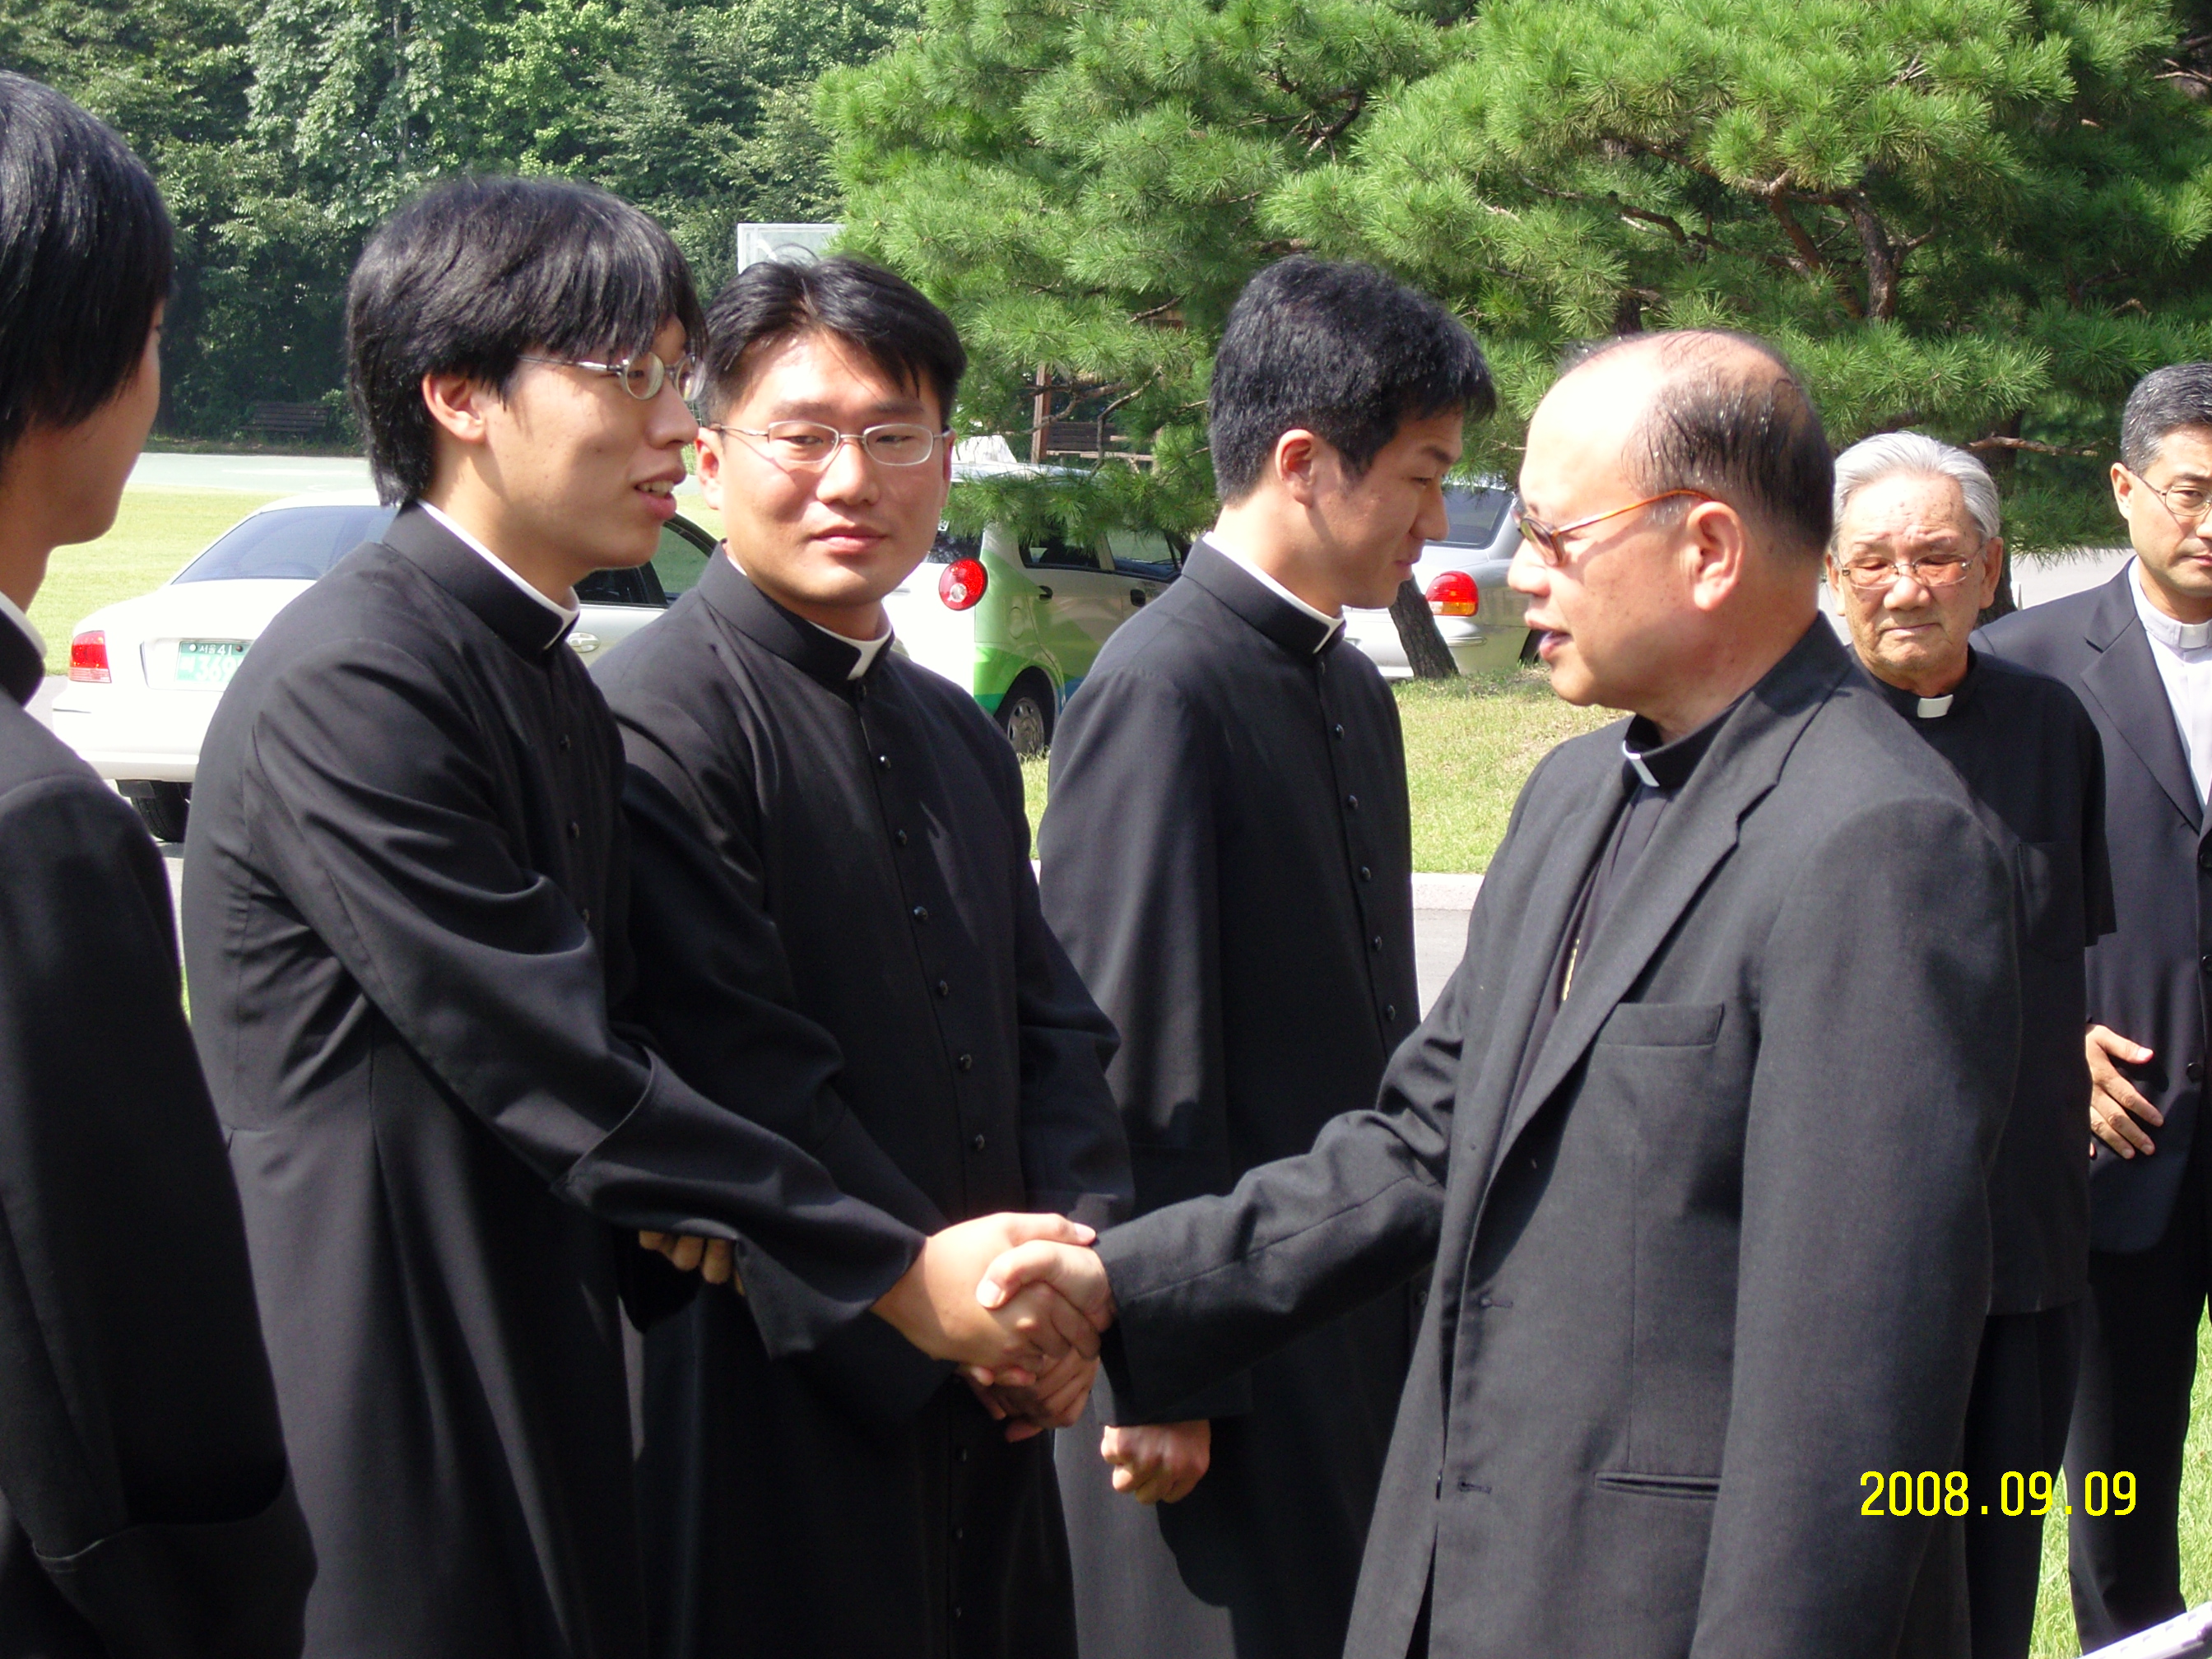 신임 교황대사 오스발도 파딜랴 대주교 방문(2008.9.9)의 관련된 이미지 입니다.